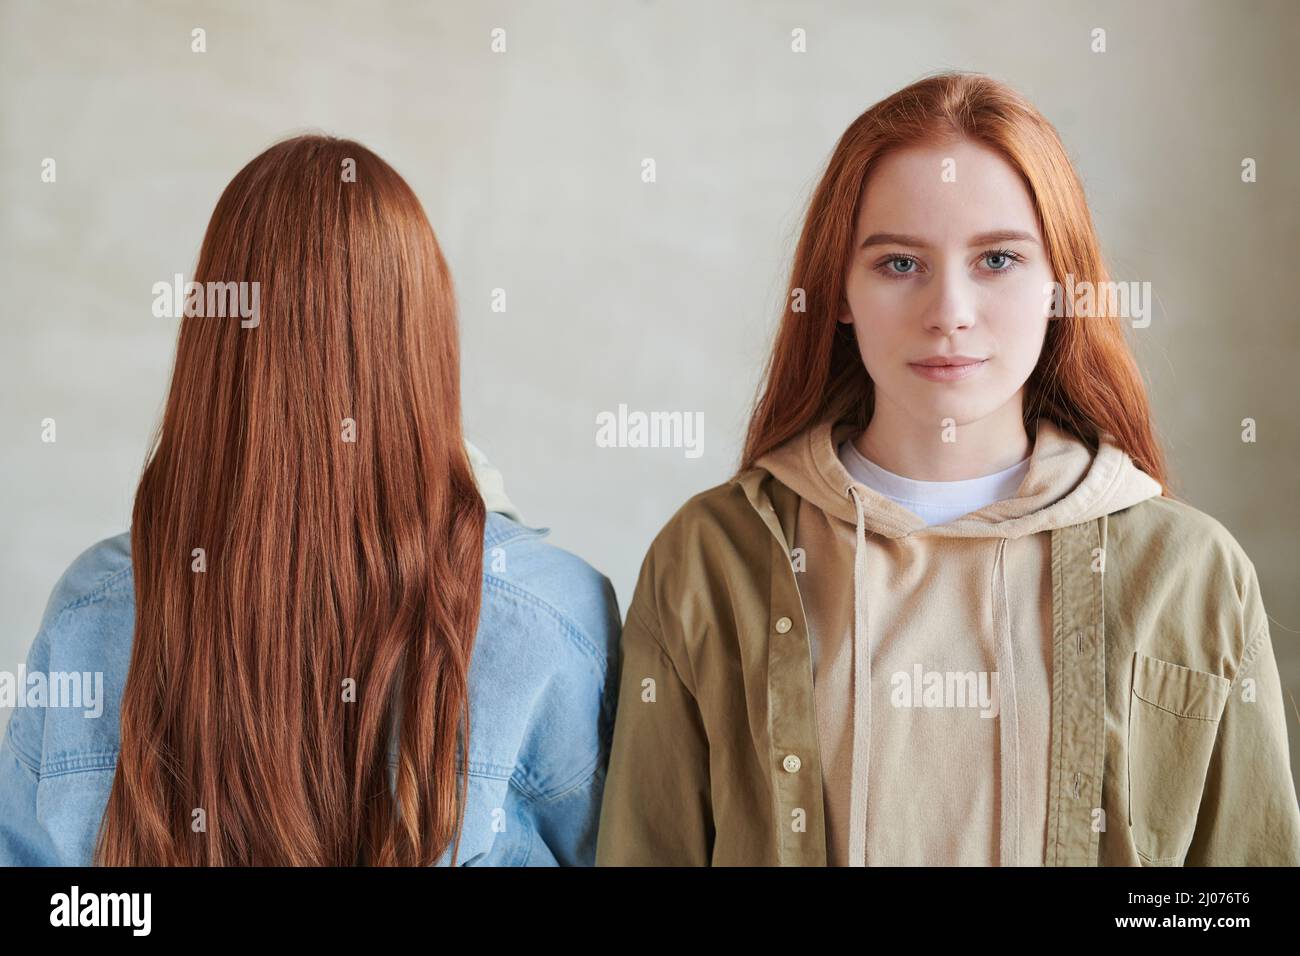 Portrait conceptuel horizontal moyen en gros plan de deux femmes aux cheveux rouges debout ensemble, l'une d'elles regardant l'appareil photo Banque D'Images